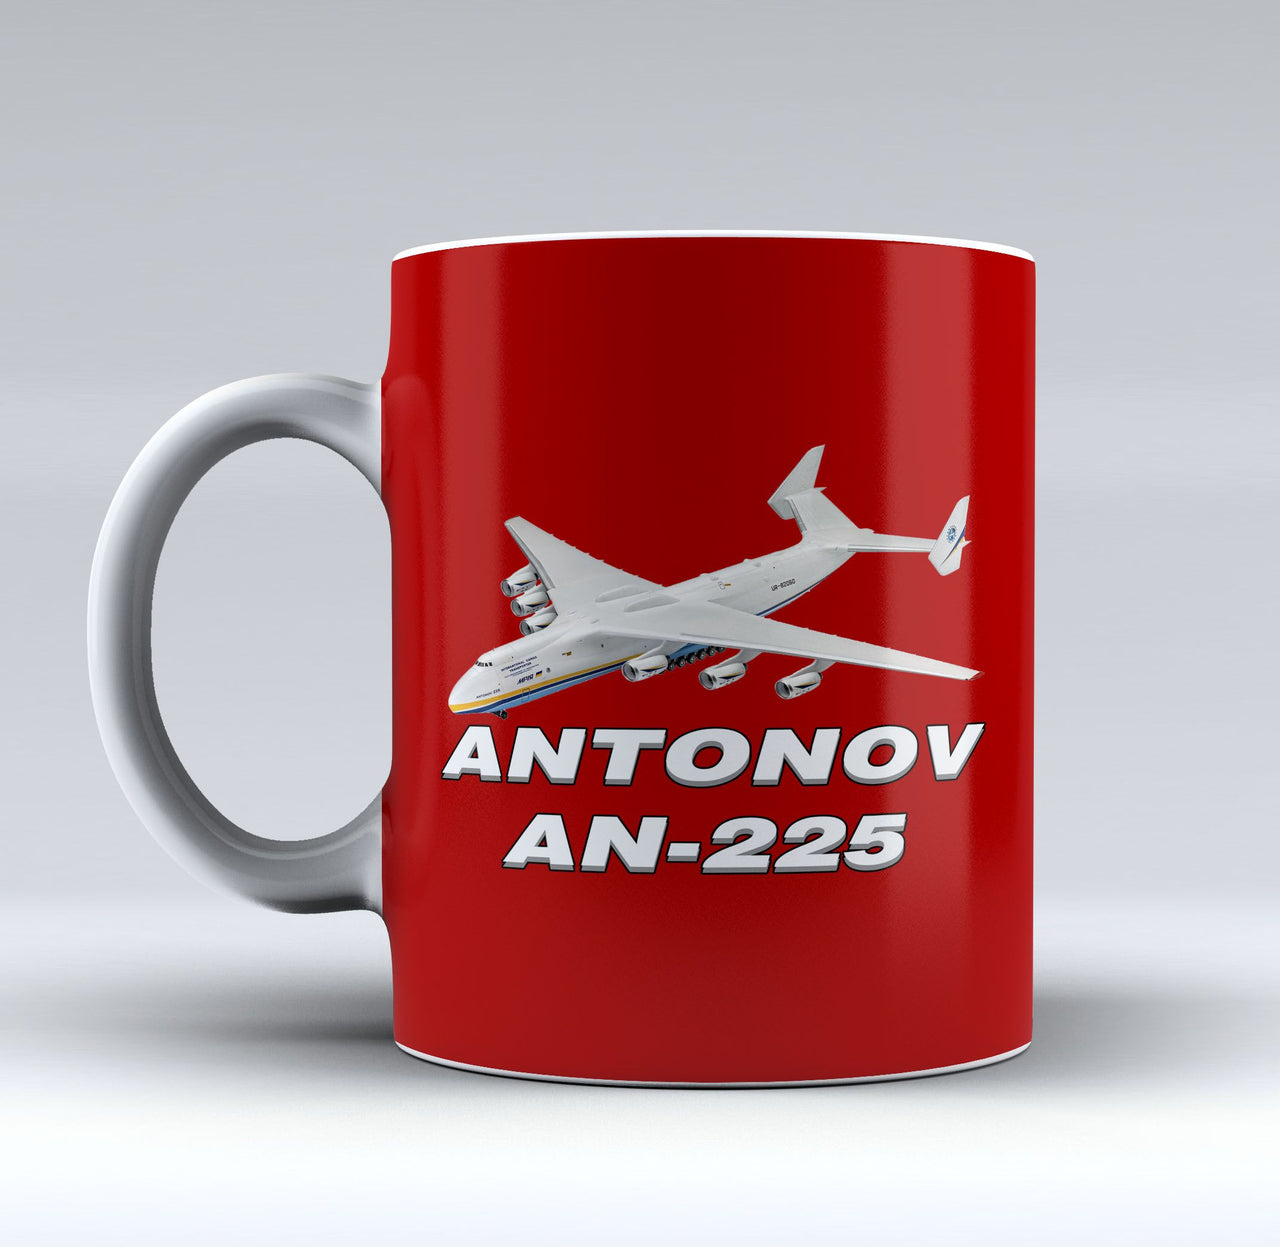 Antonov AN-225 (12) Designed Mugs